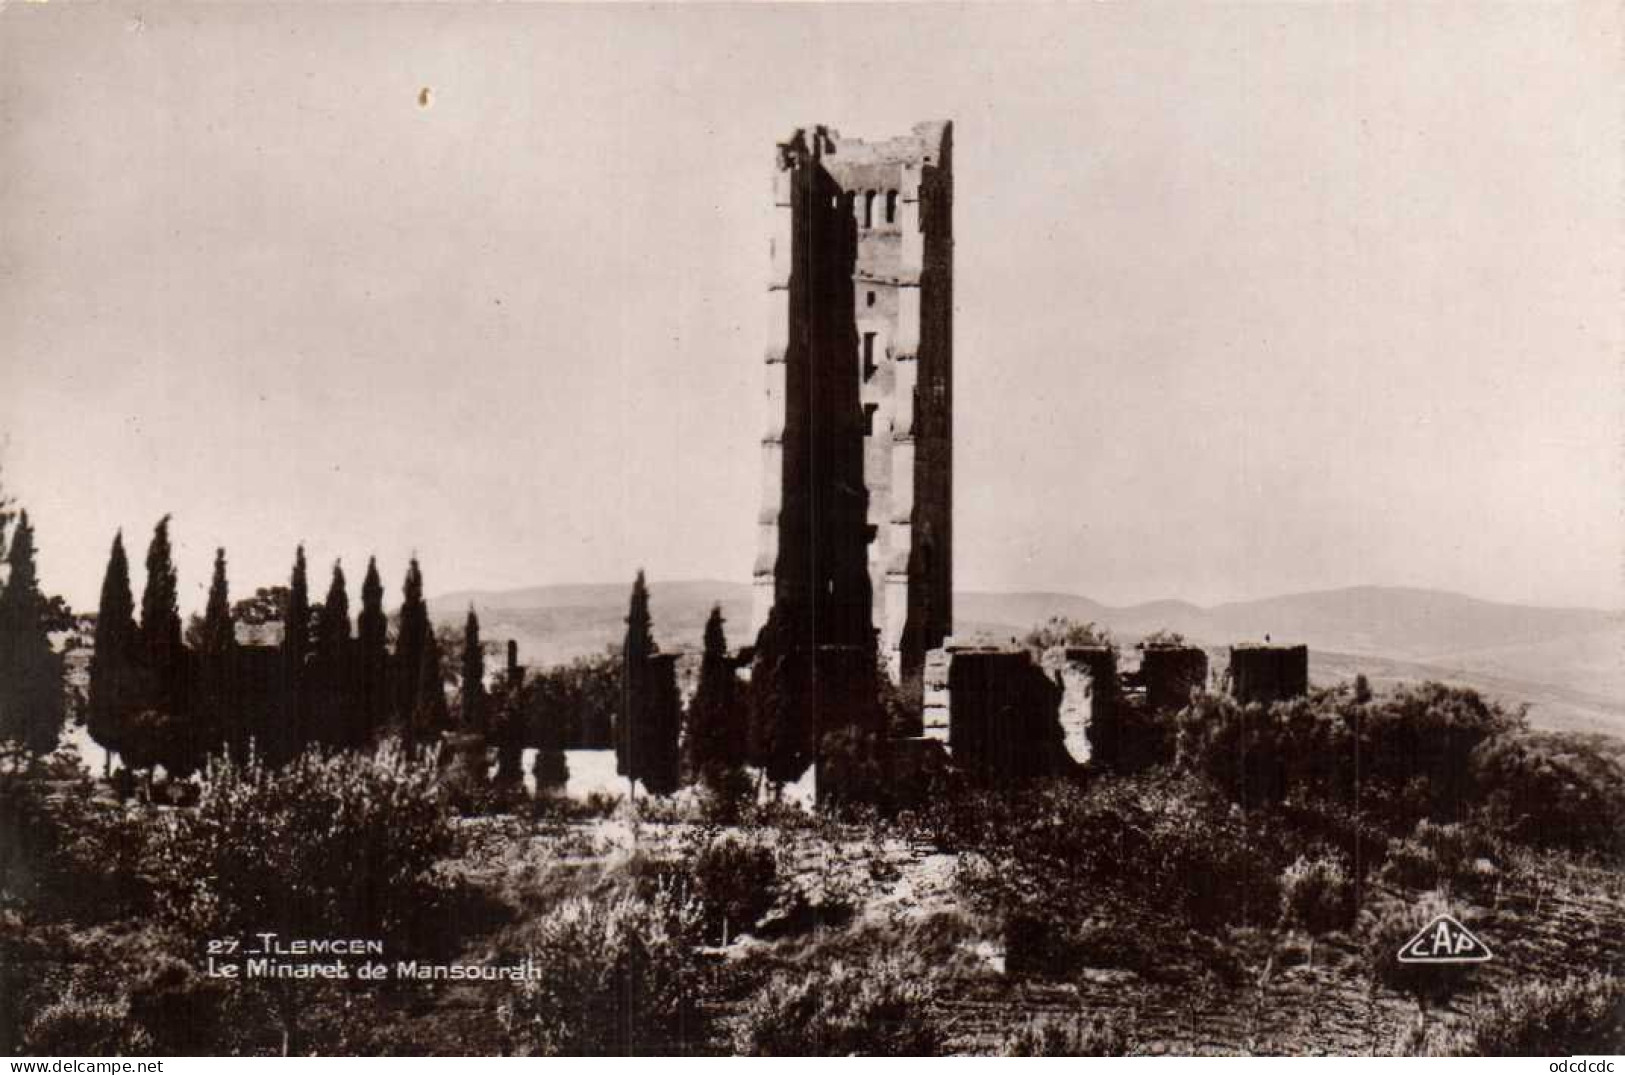 TLEMCEN Le Minaret De Mansourah RV - Tlemcen